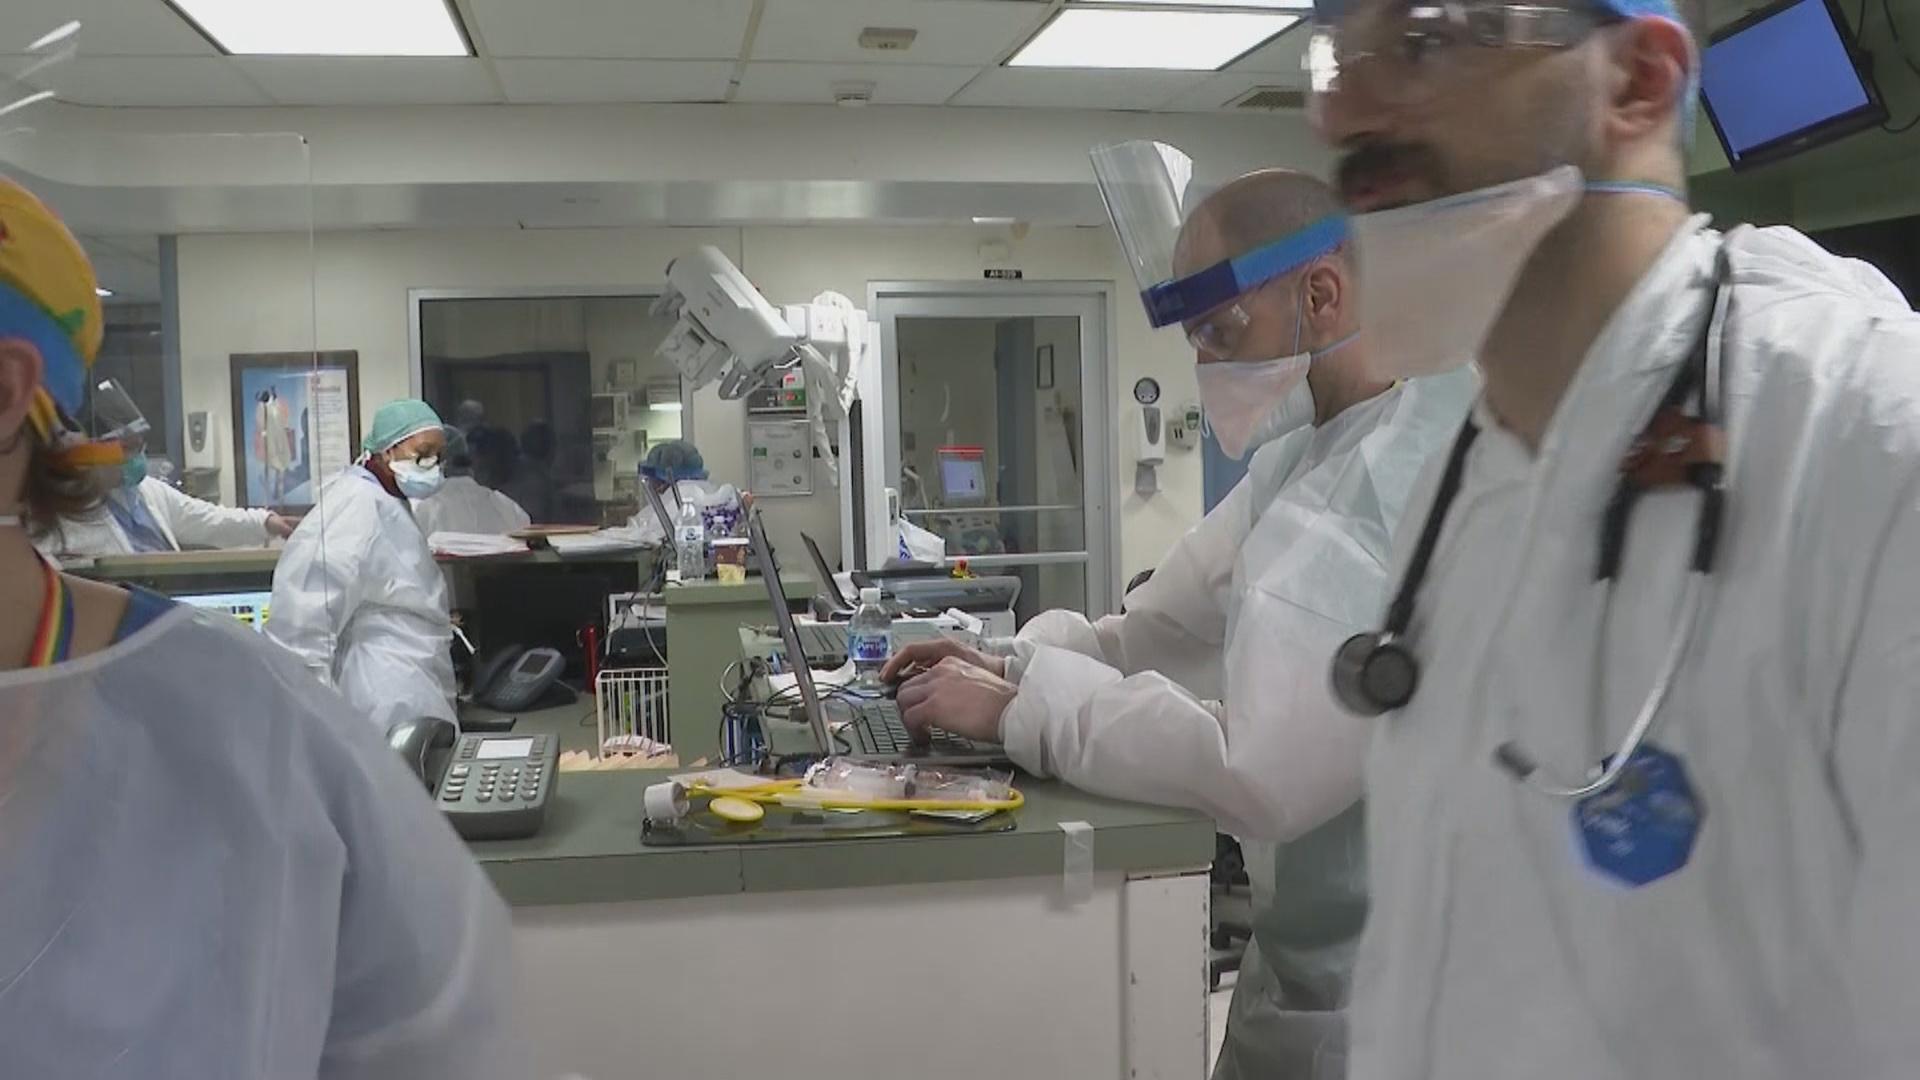 An emergency room at a New York hospital deals with coronavirus cases. (WTTW News via CNN)